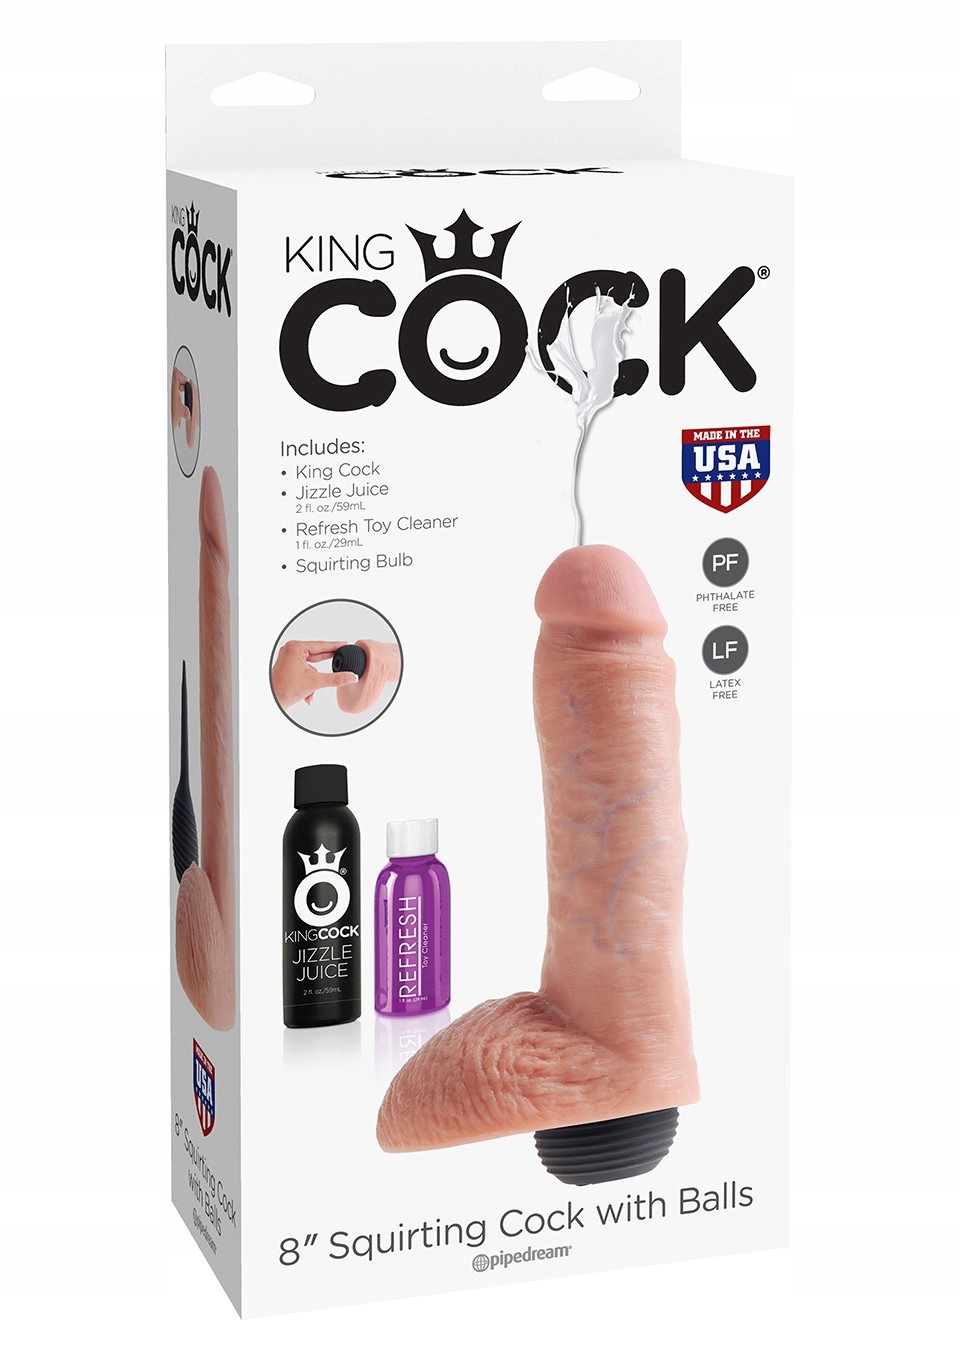 brittani mcgowan share king cock squirting dildo photos